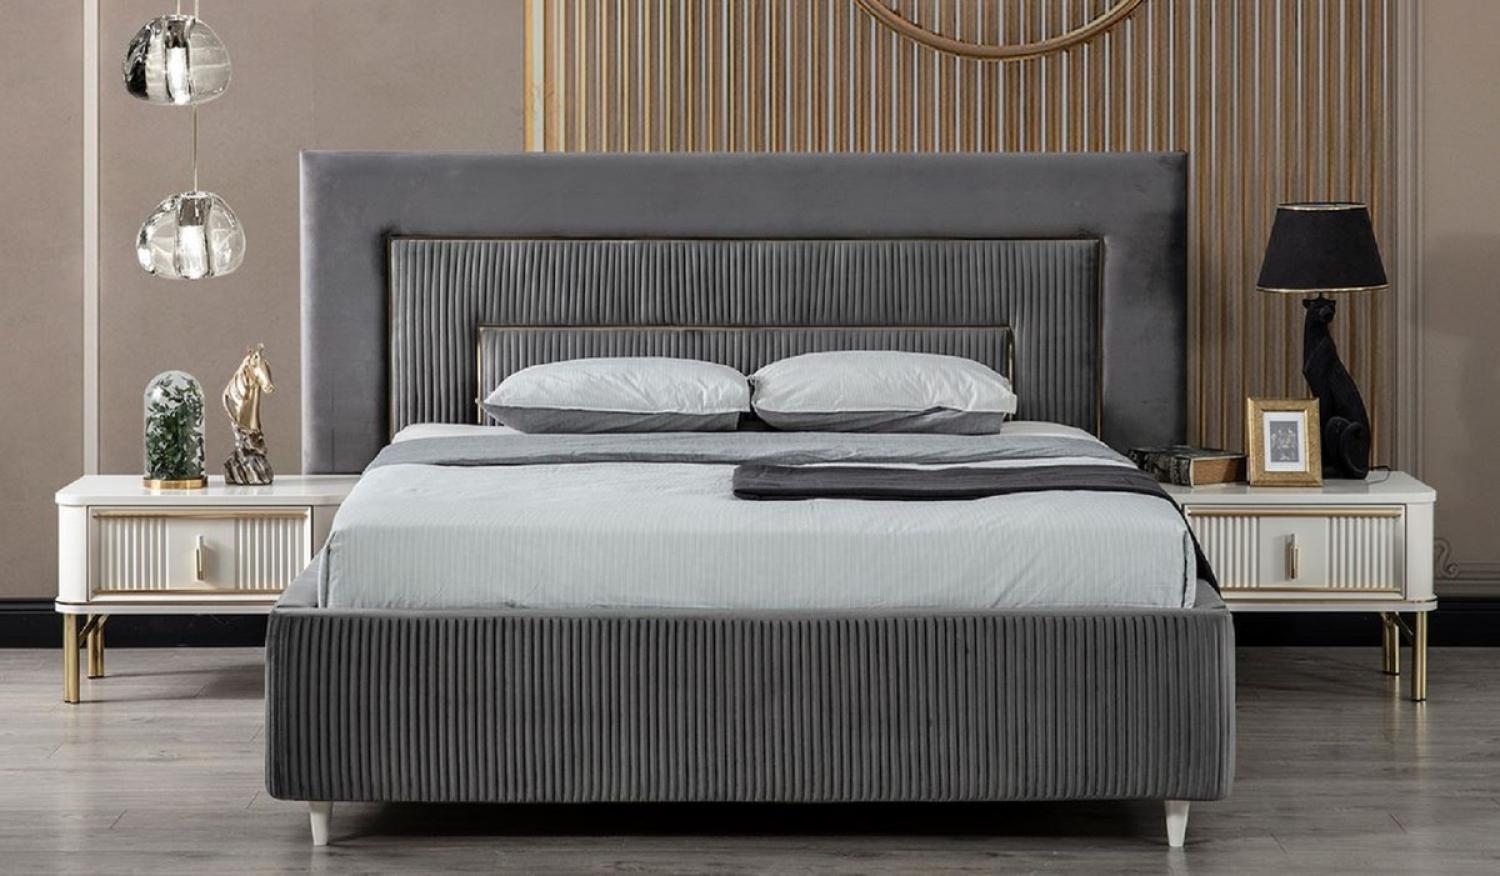 Casa Padrino Luxus Schlafzimmer Set Grau / Weiß / Gold - 1 Doppelbett mit Kopfteil & 2 Nachttische - Schlafzimmer Möbel - Luxus Kollektion Bild 1